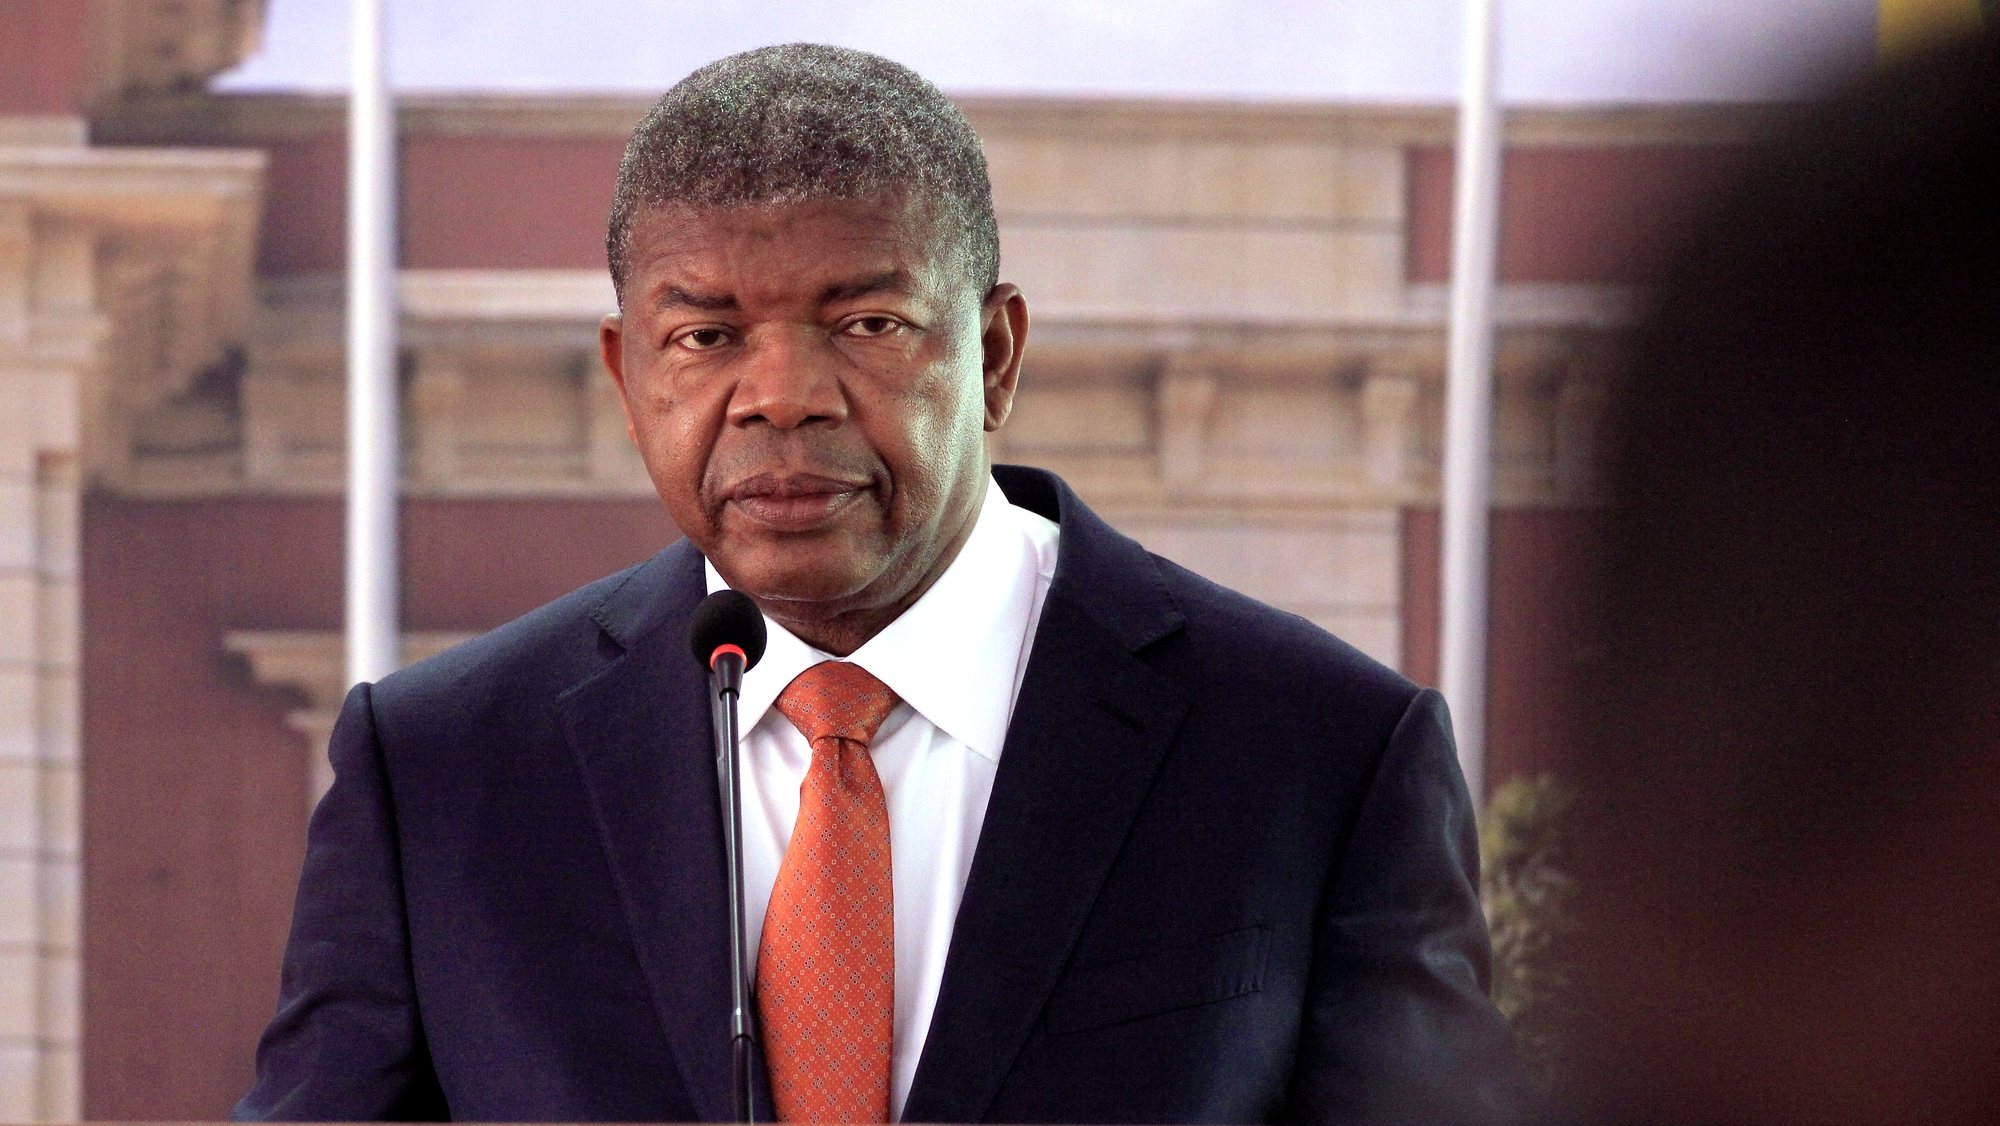 O Presidente da República de Angola, João Lourenço, intervém durante uma conferência de imprensa conjunta com o seu homólogo de São Tomé e Príncipe, Carlos Manuel Vila Nova (ausente da fotografia), no palacio presidencial, Luanda, Angola, 9 de maio de 2022. AMPE ROGÉRIO/LUSA